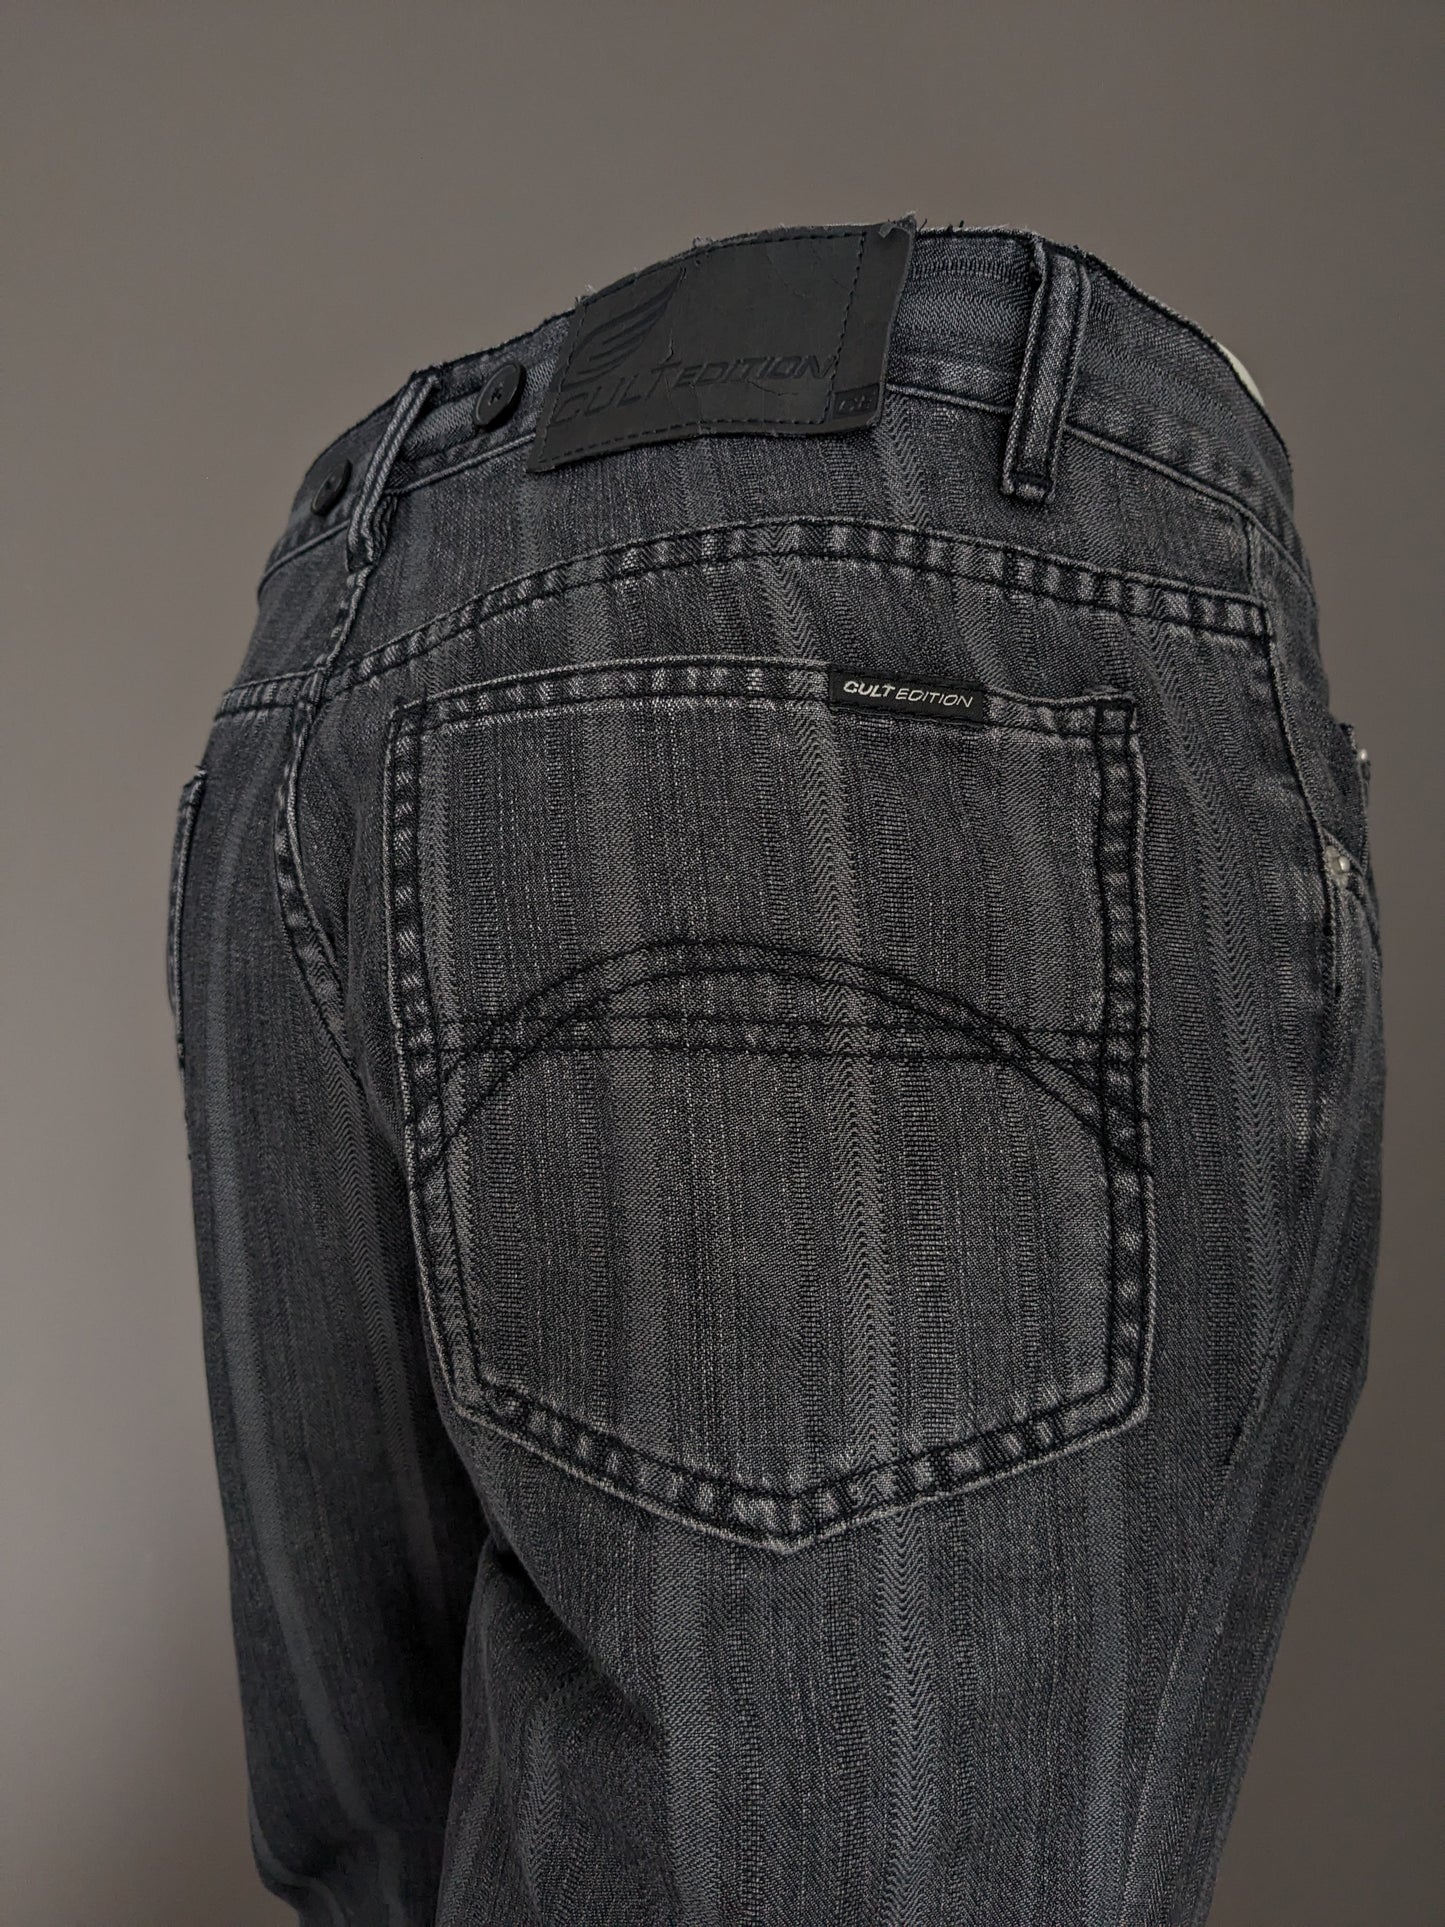 Jeans edizione di culto con applicazioni a bretelle. Striped nero grigio. Taglia W32 - L28.